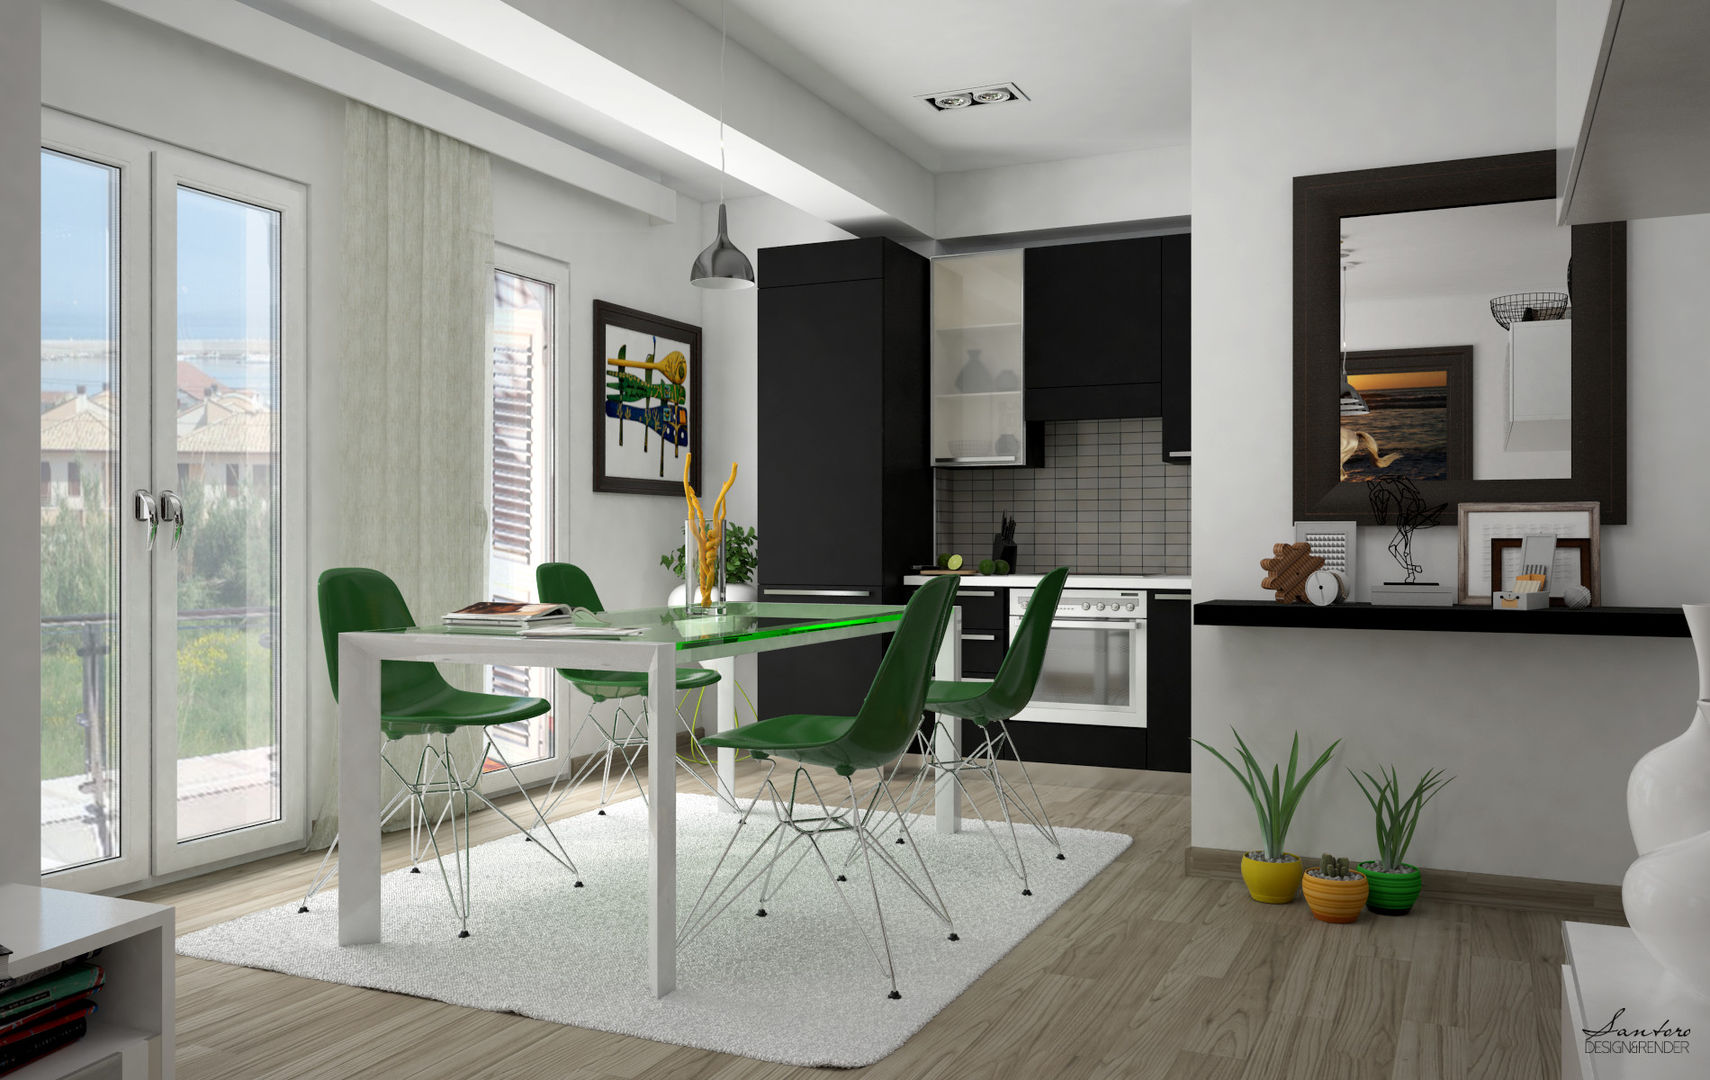 Design & Render livingroom – arredamento S.Agata Militello (ME) , Santoro Design Render Santoro Design Render Cocinas modernas: Ideas, imágenes y decoración